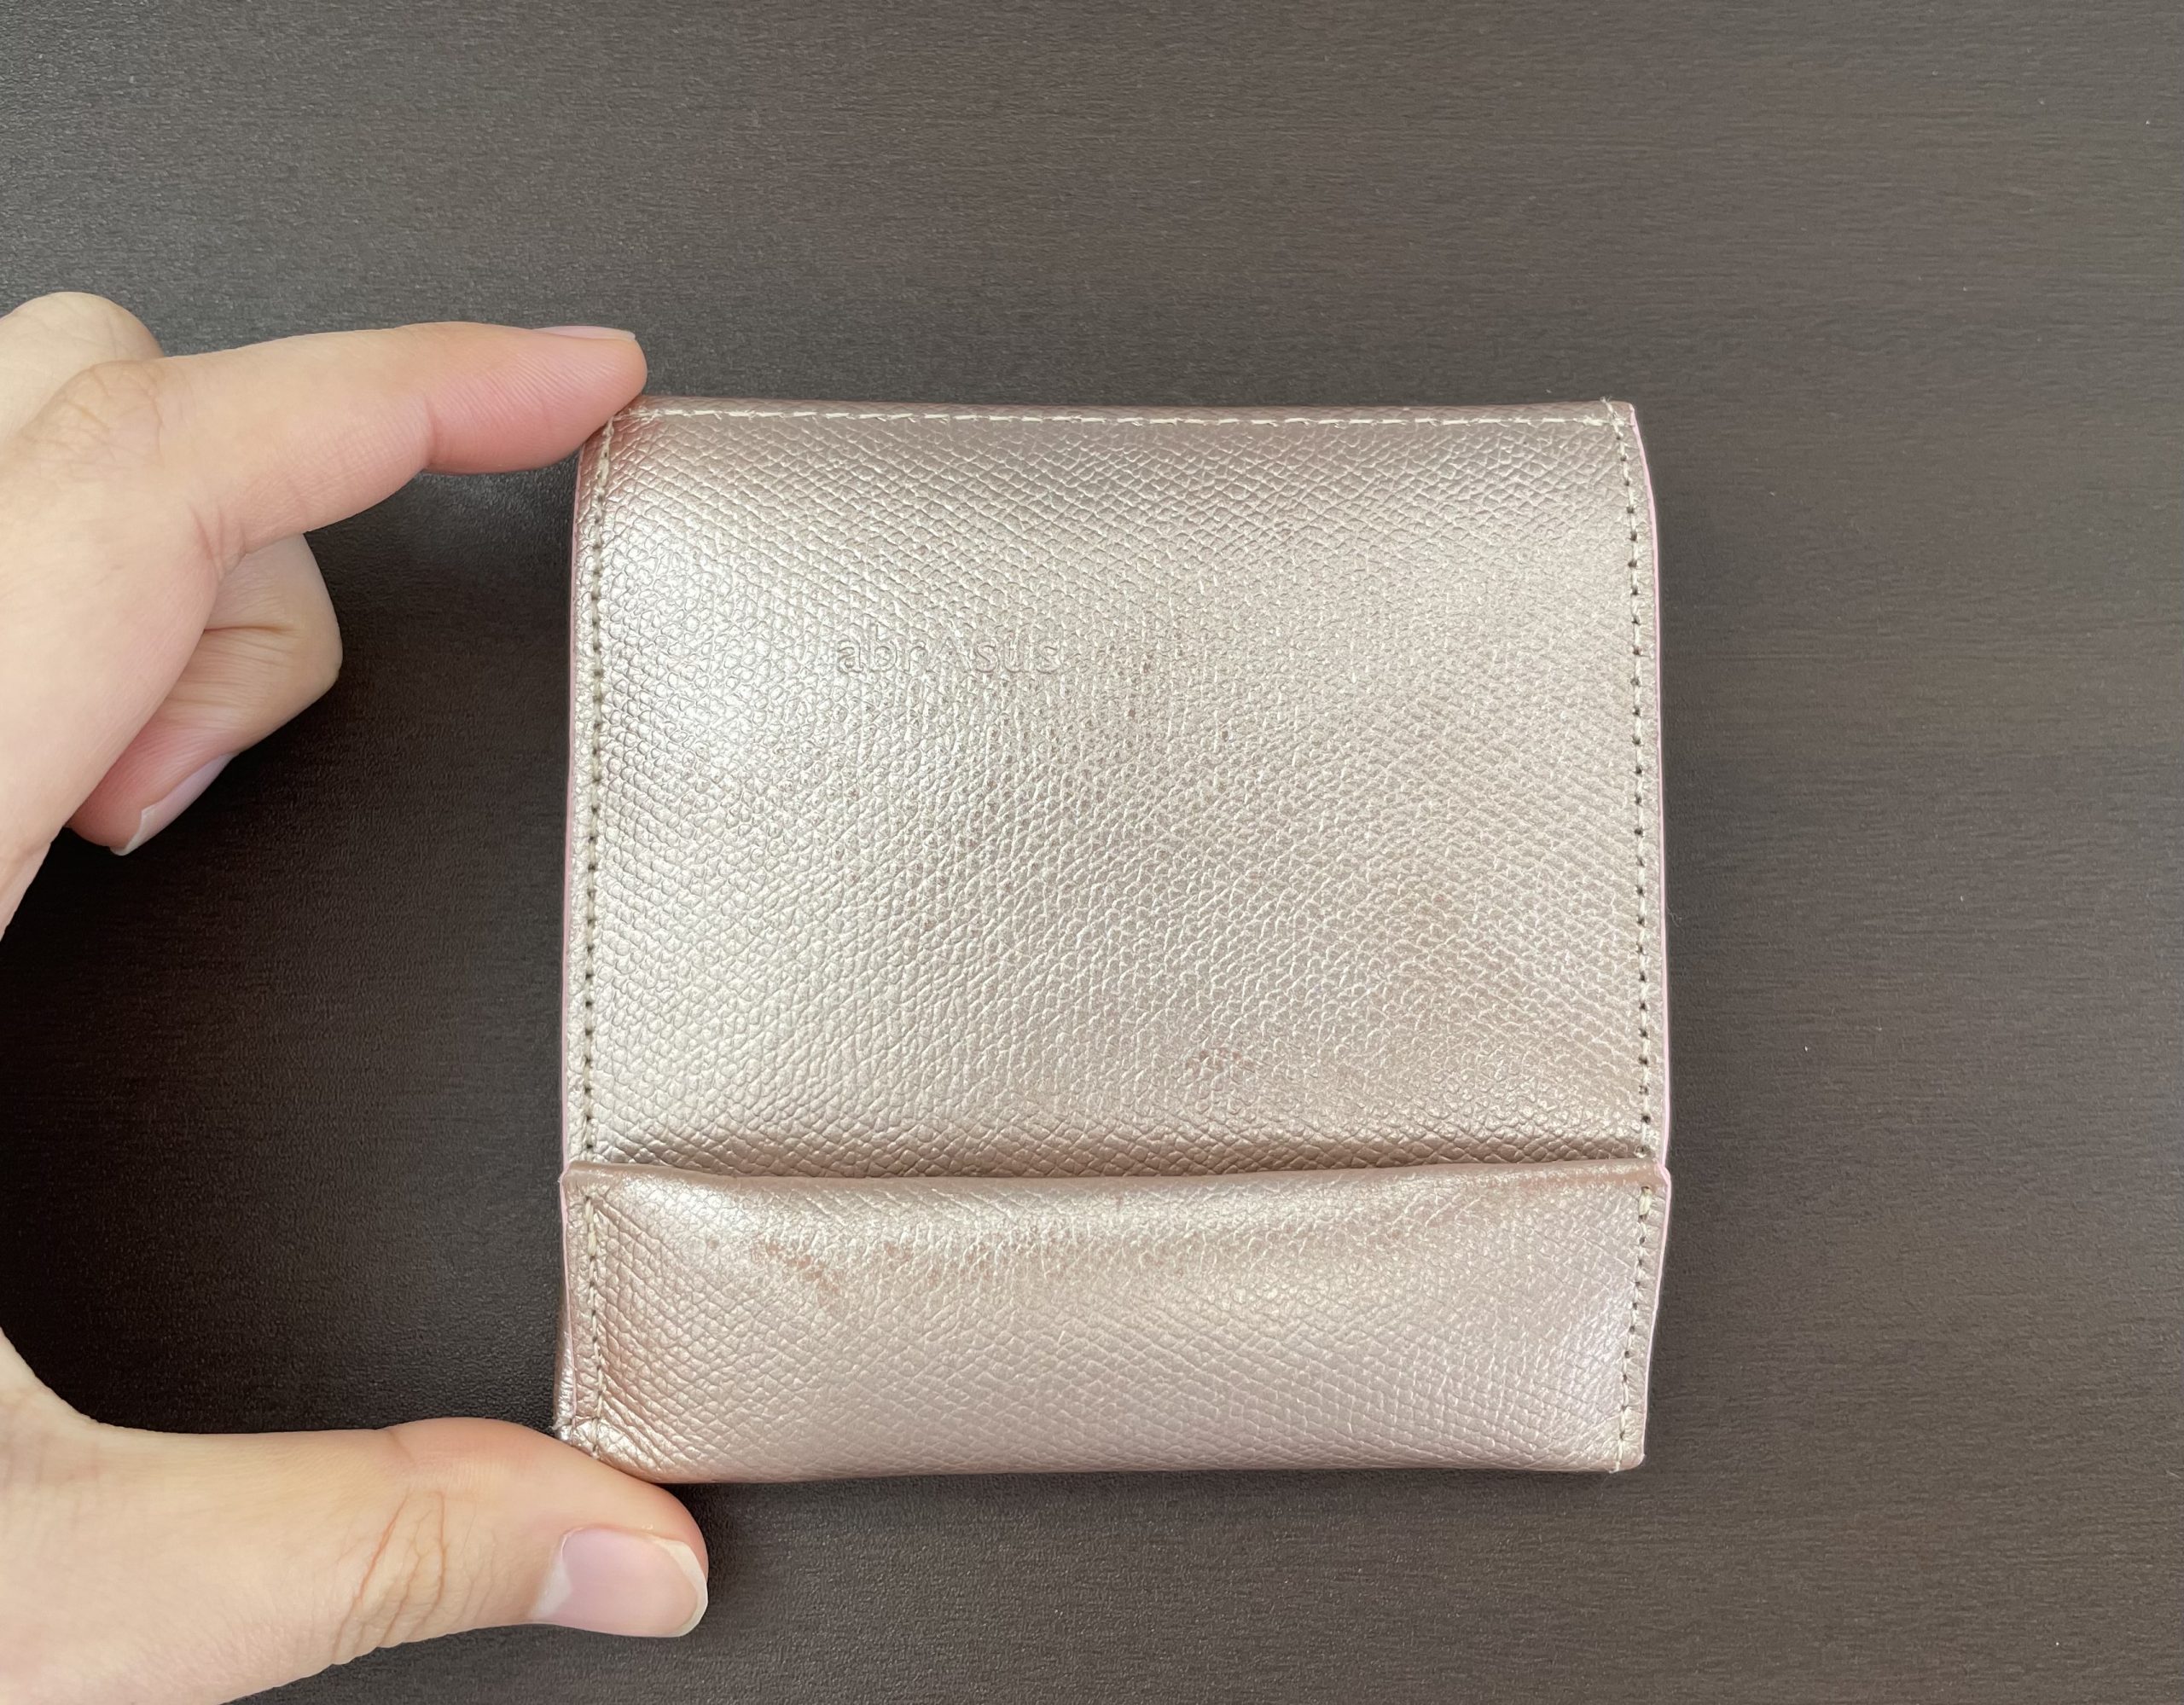 レビュー】アブラサスの「薄い財布」を1年使ってみた感想【良かった点・注意点】 | 点から点への備忘録